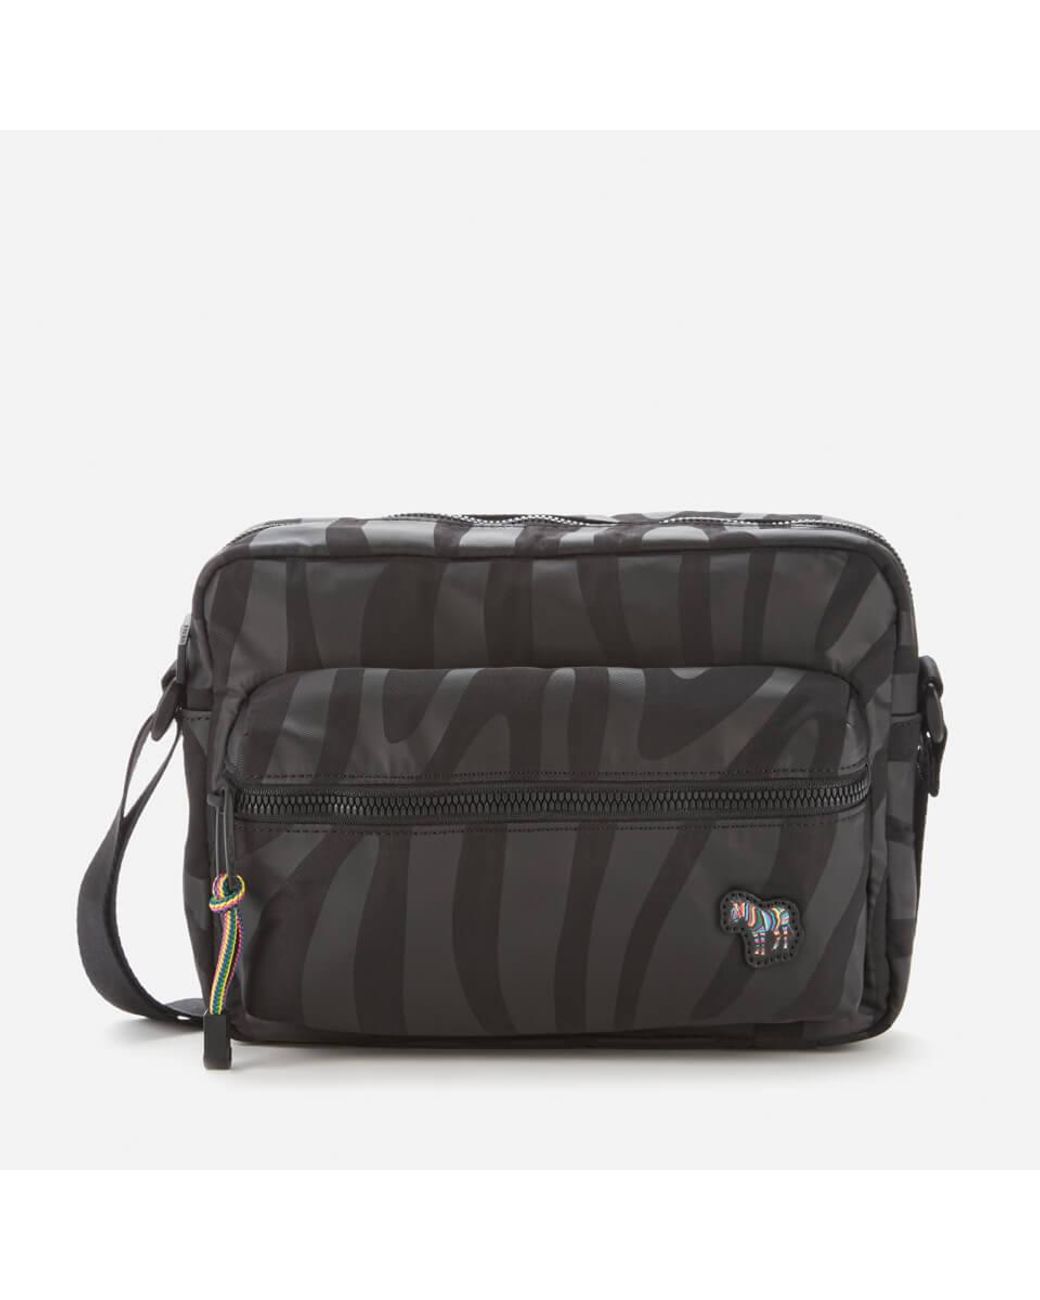 PS Paul Smith zebra logo crossbody bag in black